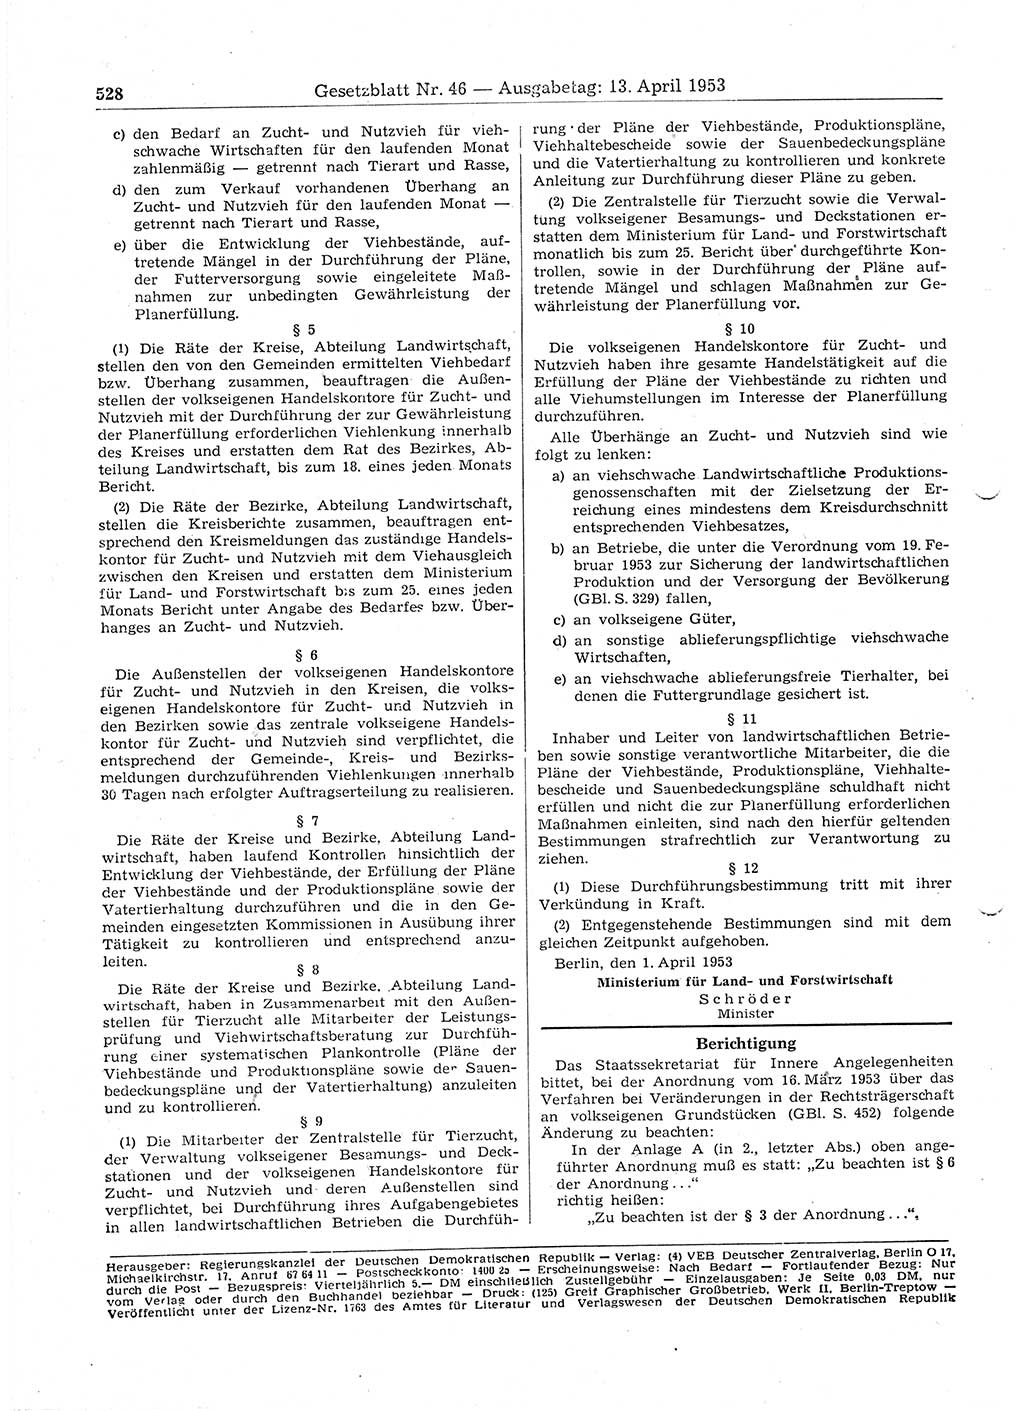 Gesetzblatt (GBl.) der Deutschen Demokratischen Republik (DDR) 1953, Seite 528 (GBl. DDR 1953, S. 528)